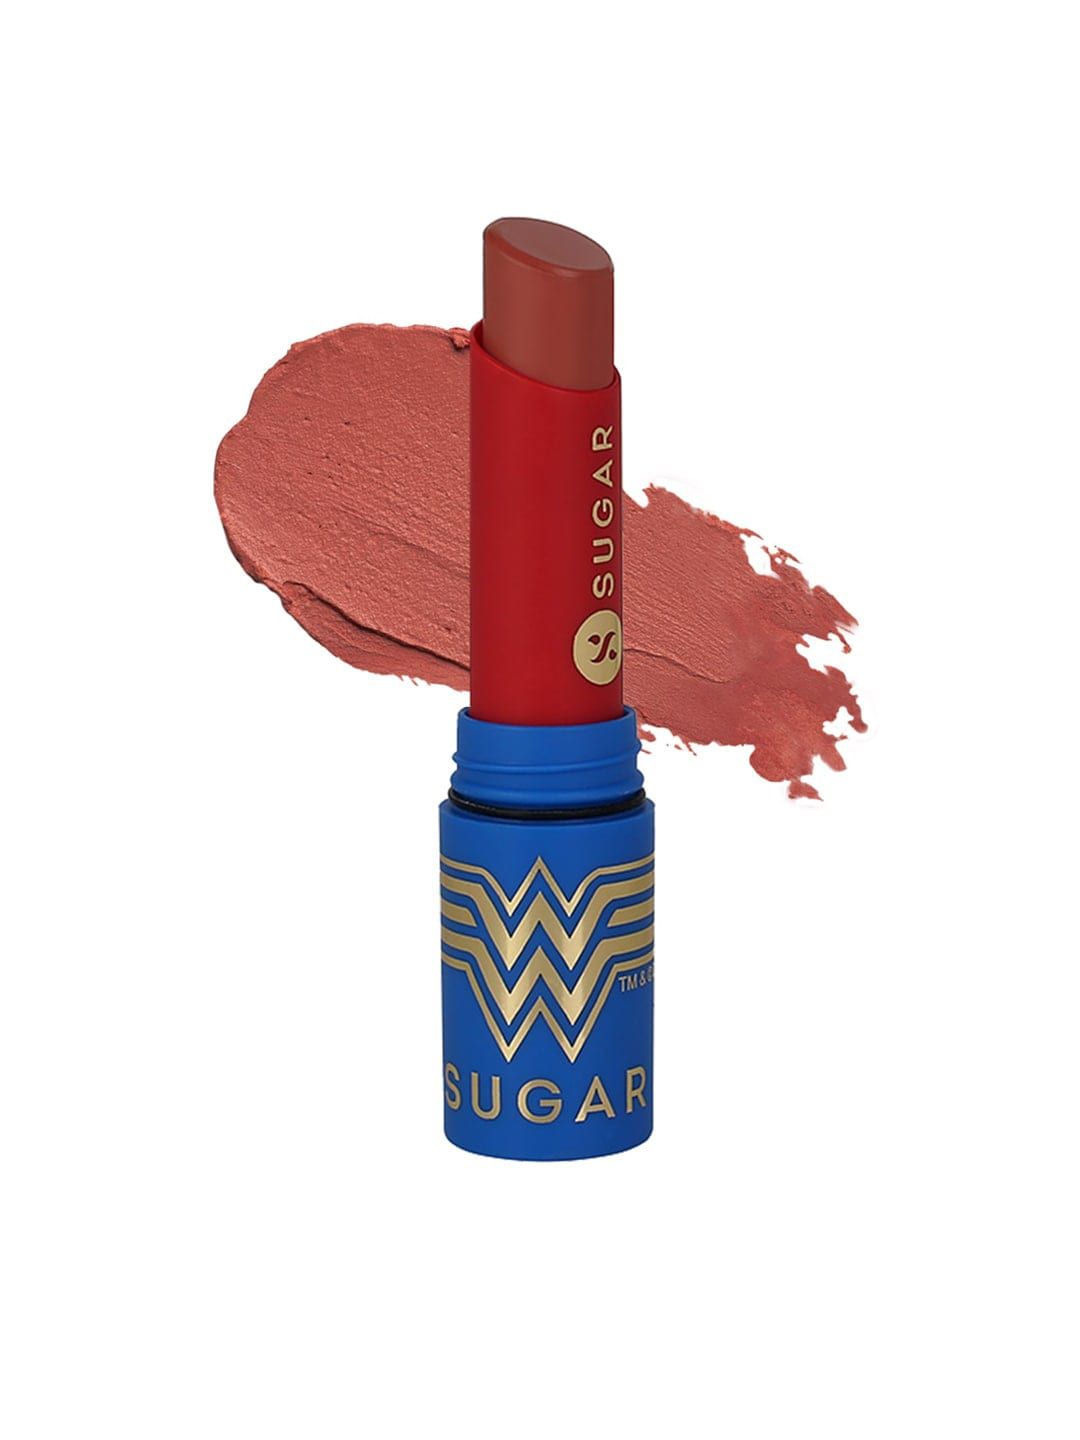 SUGAR X Wonder Woman Everlasting Matte Lipstick - 07 Fervour Price in India